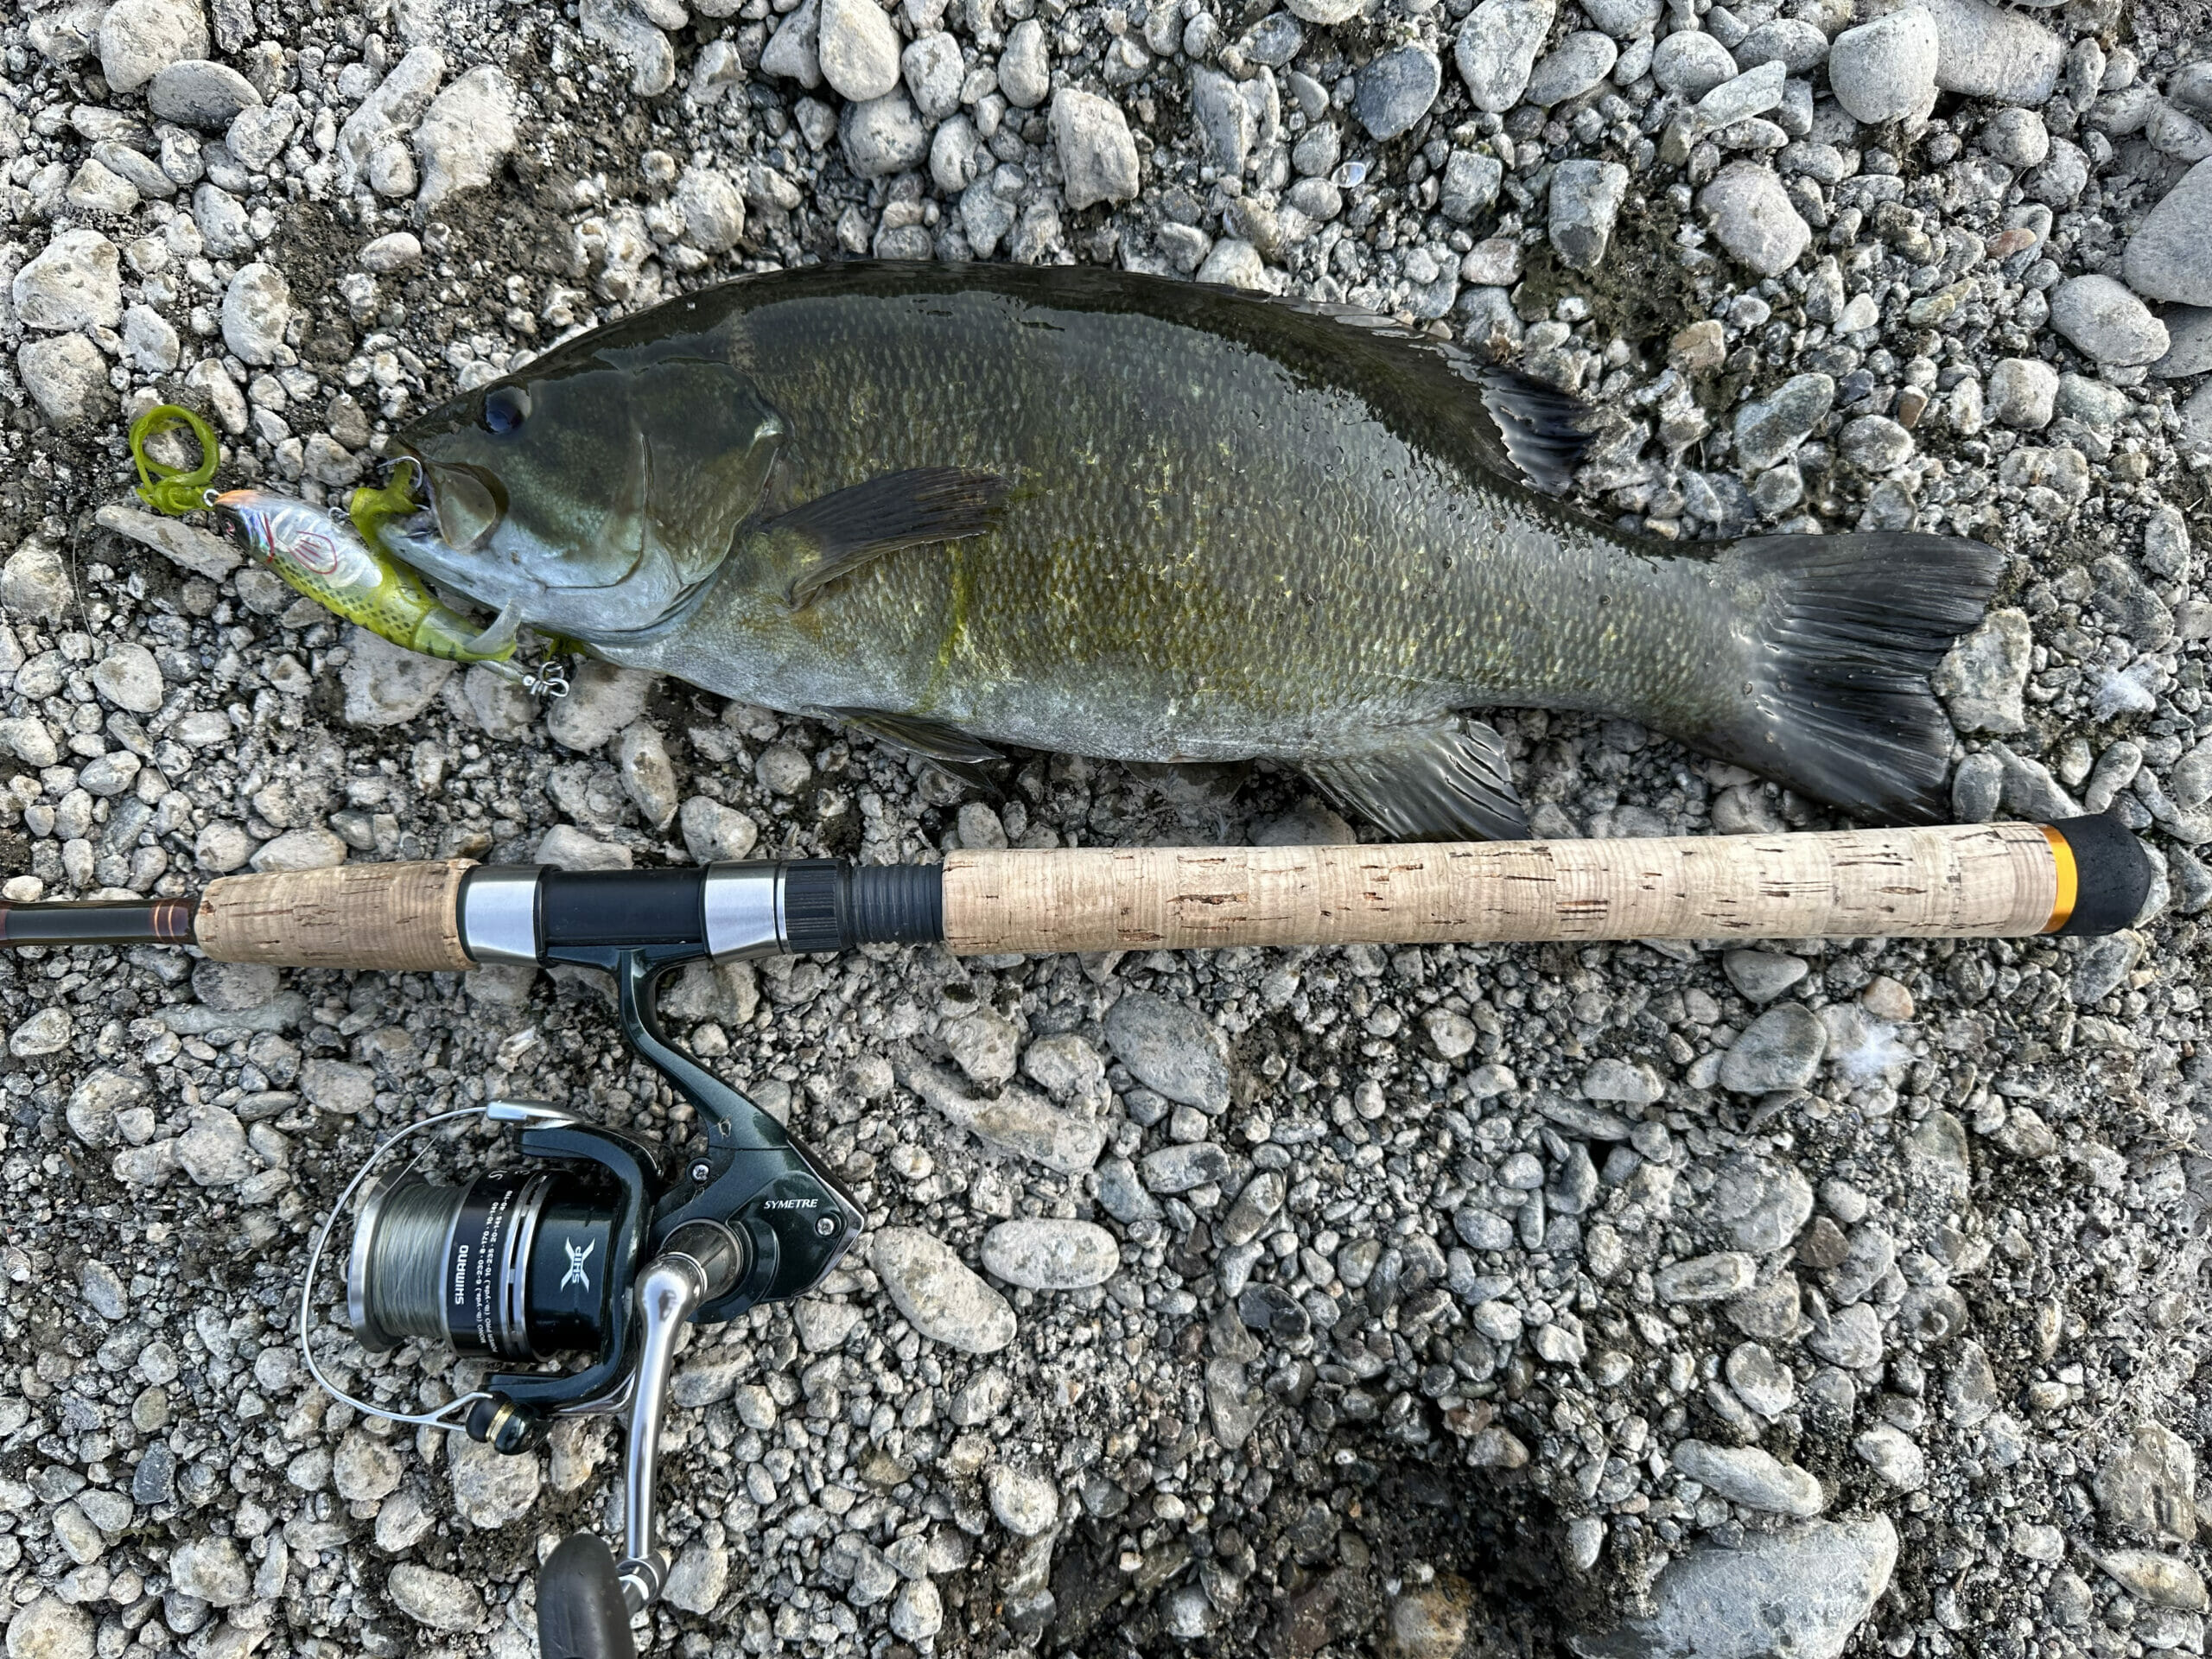 A South Umpqua bass next to a fishing pole handle